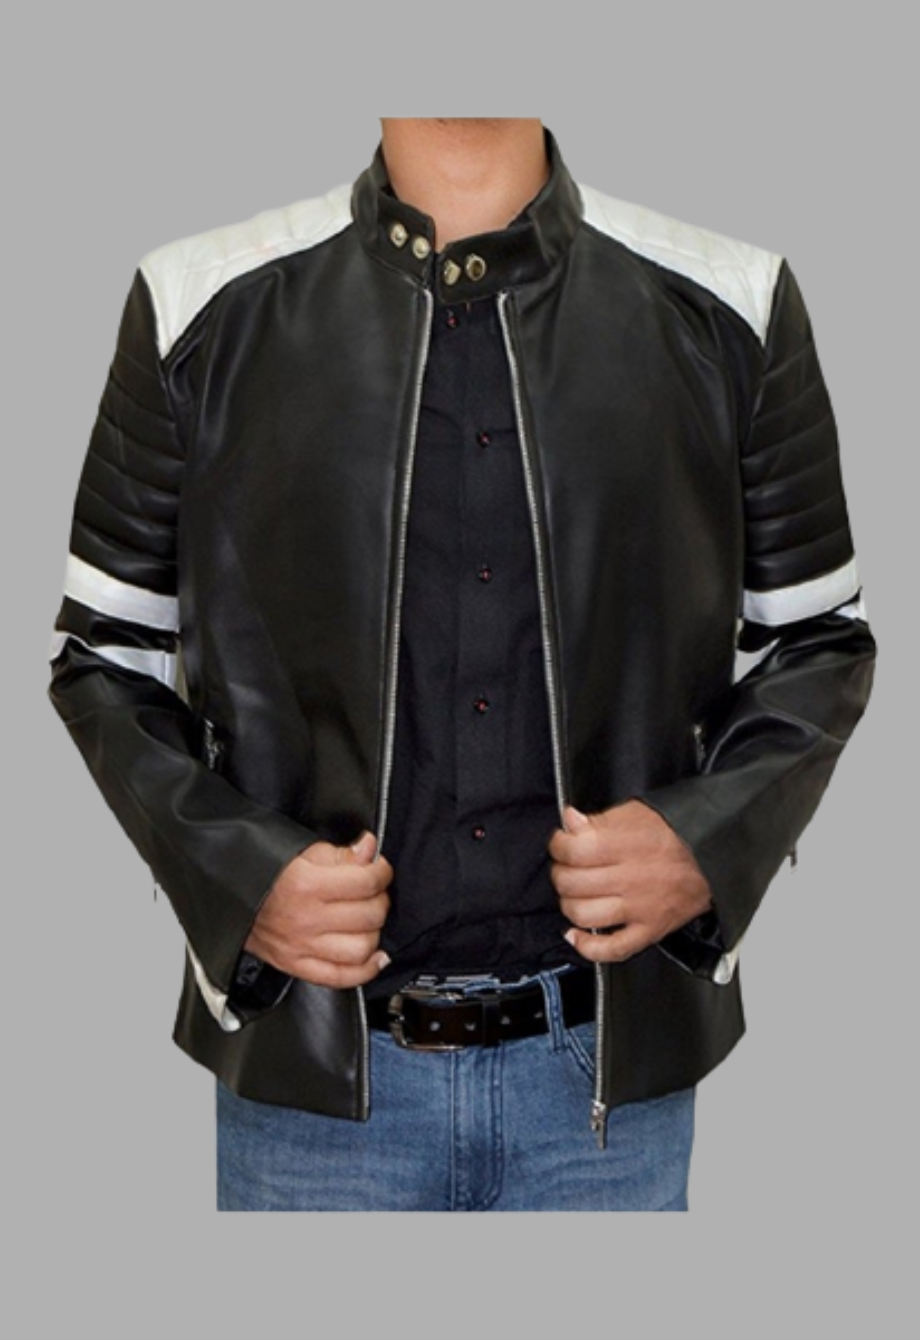 Fight Club Hybrid Mayhem Tyler Durden Brad Pitt Leather Jacket